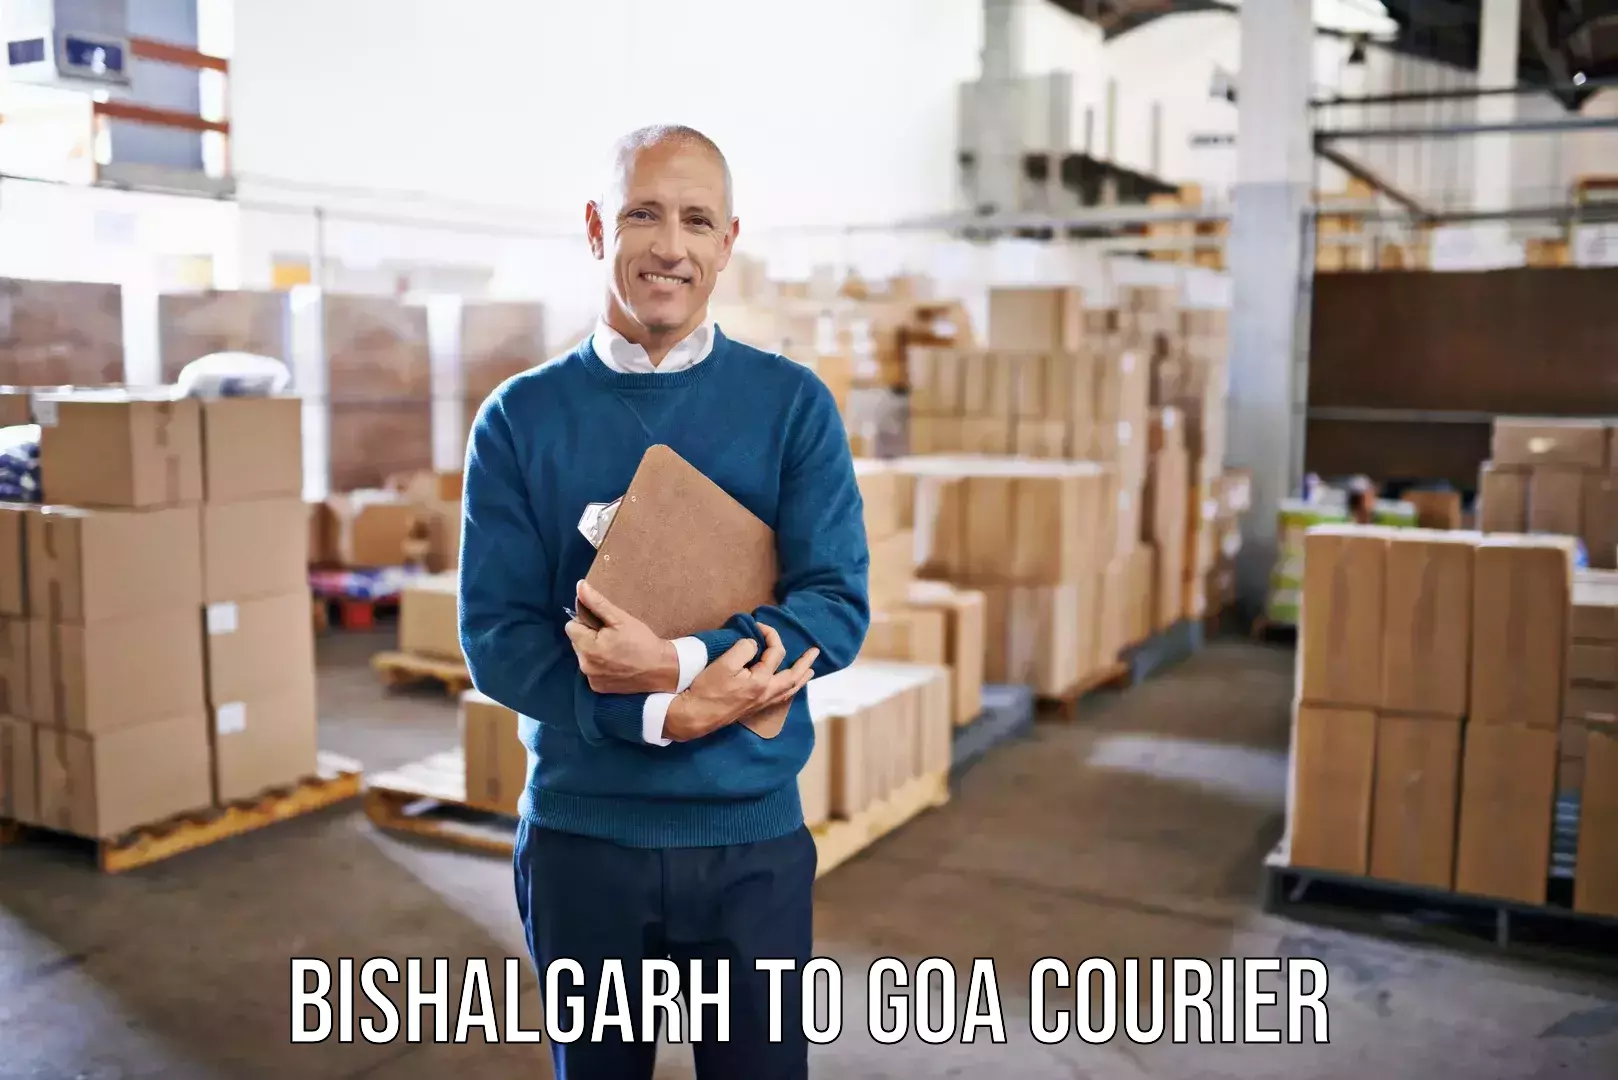 Expert moving and storage Bishalgarh to Goa